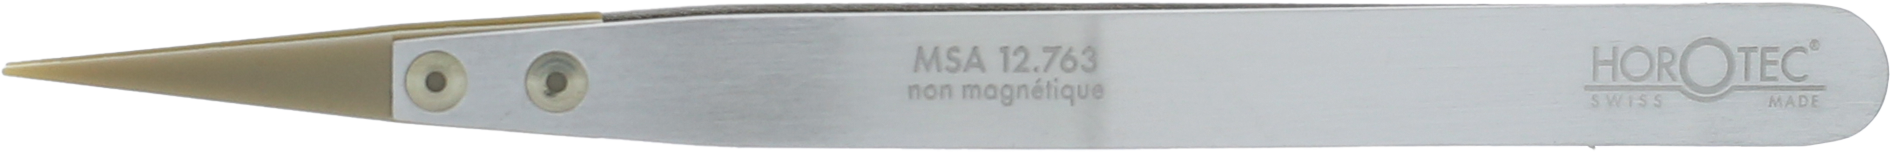 MSA12.763